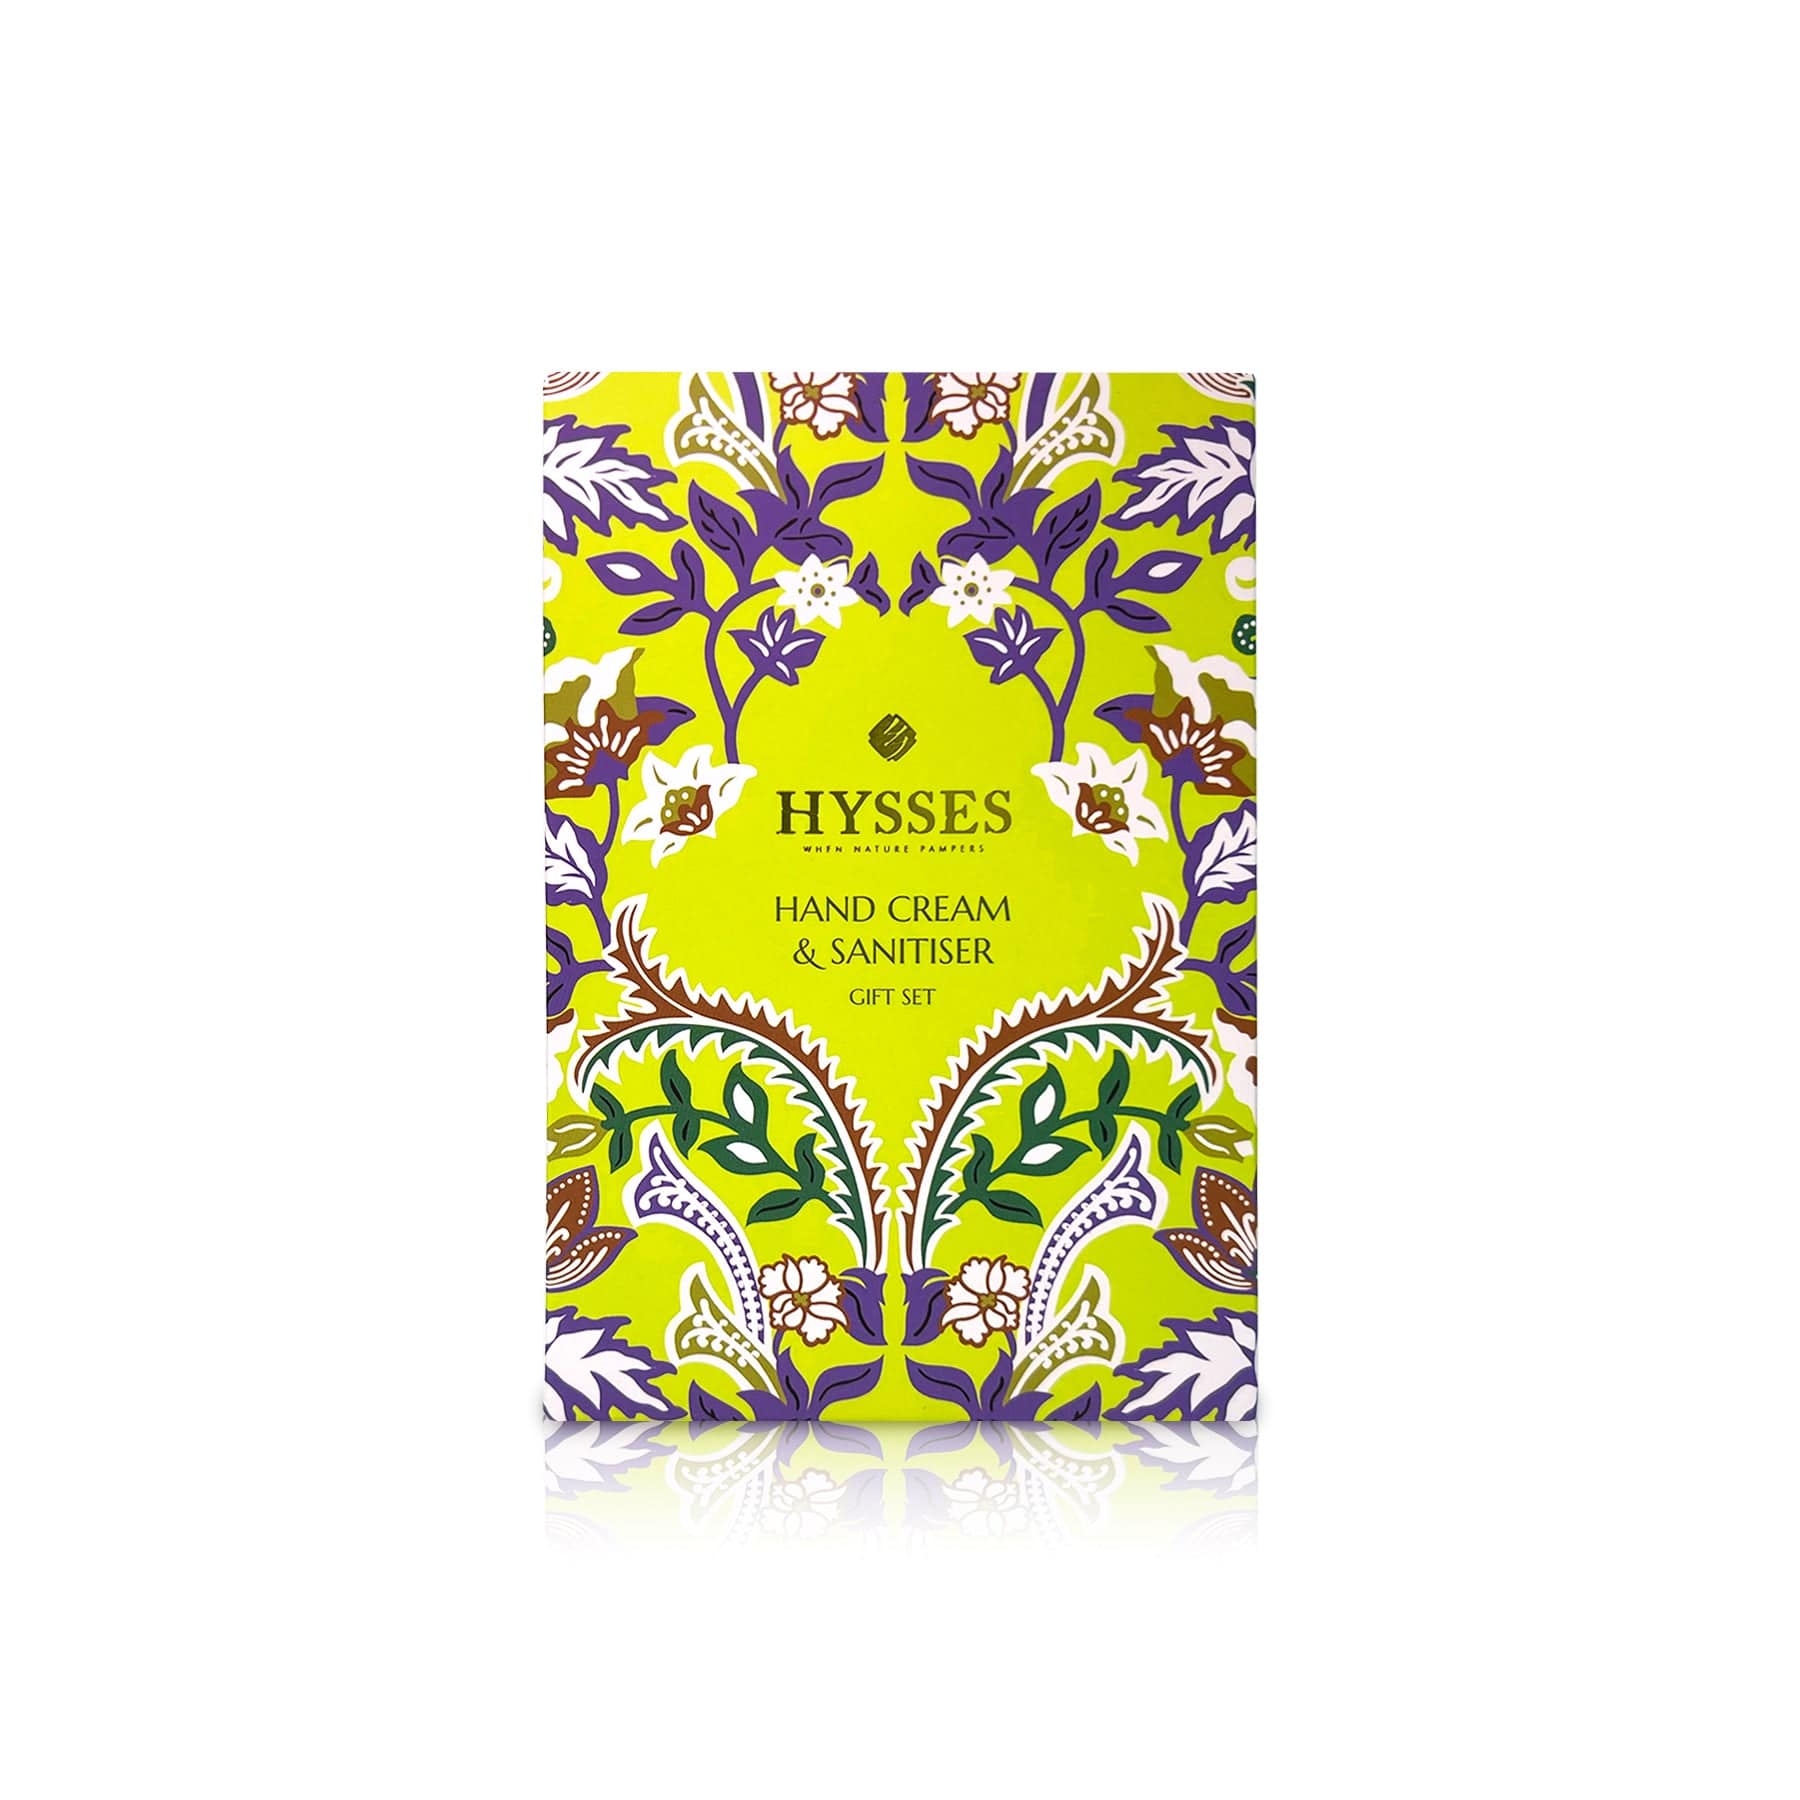 Hysses Body Care Travel Gift Set (Hand Cream & Hand Sanitiser)